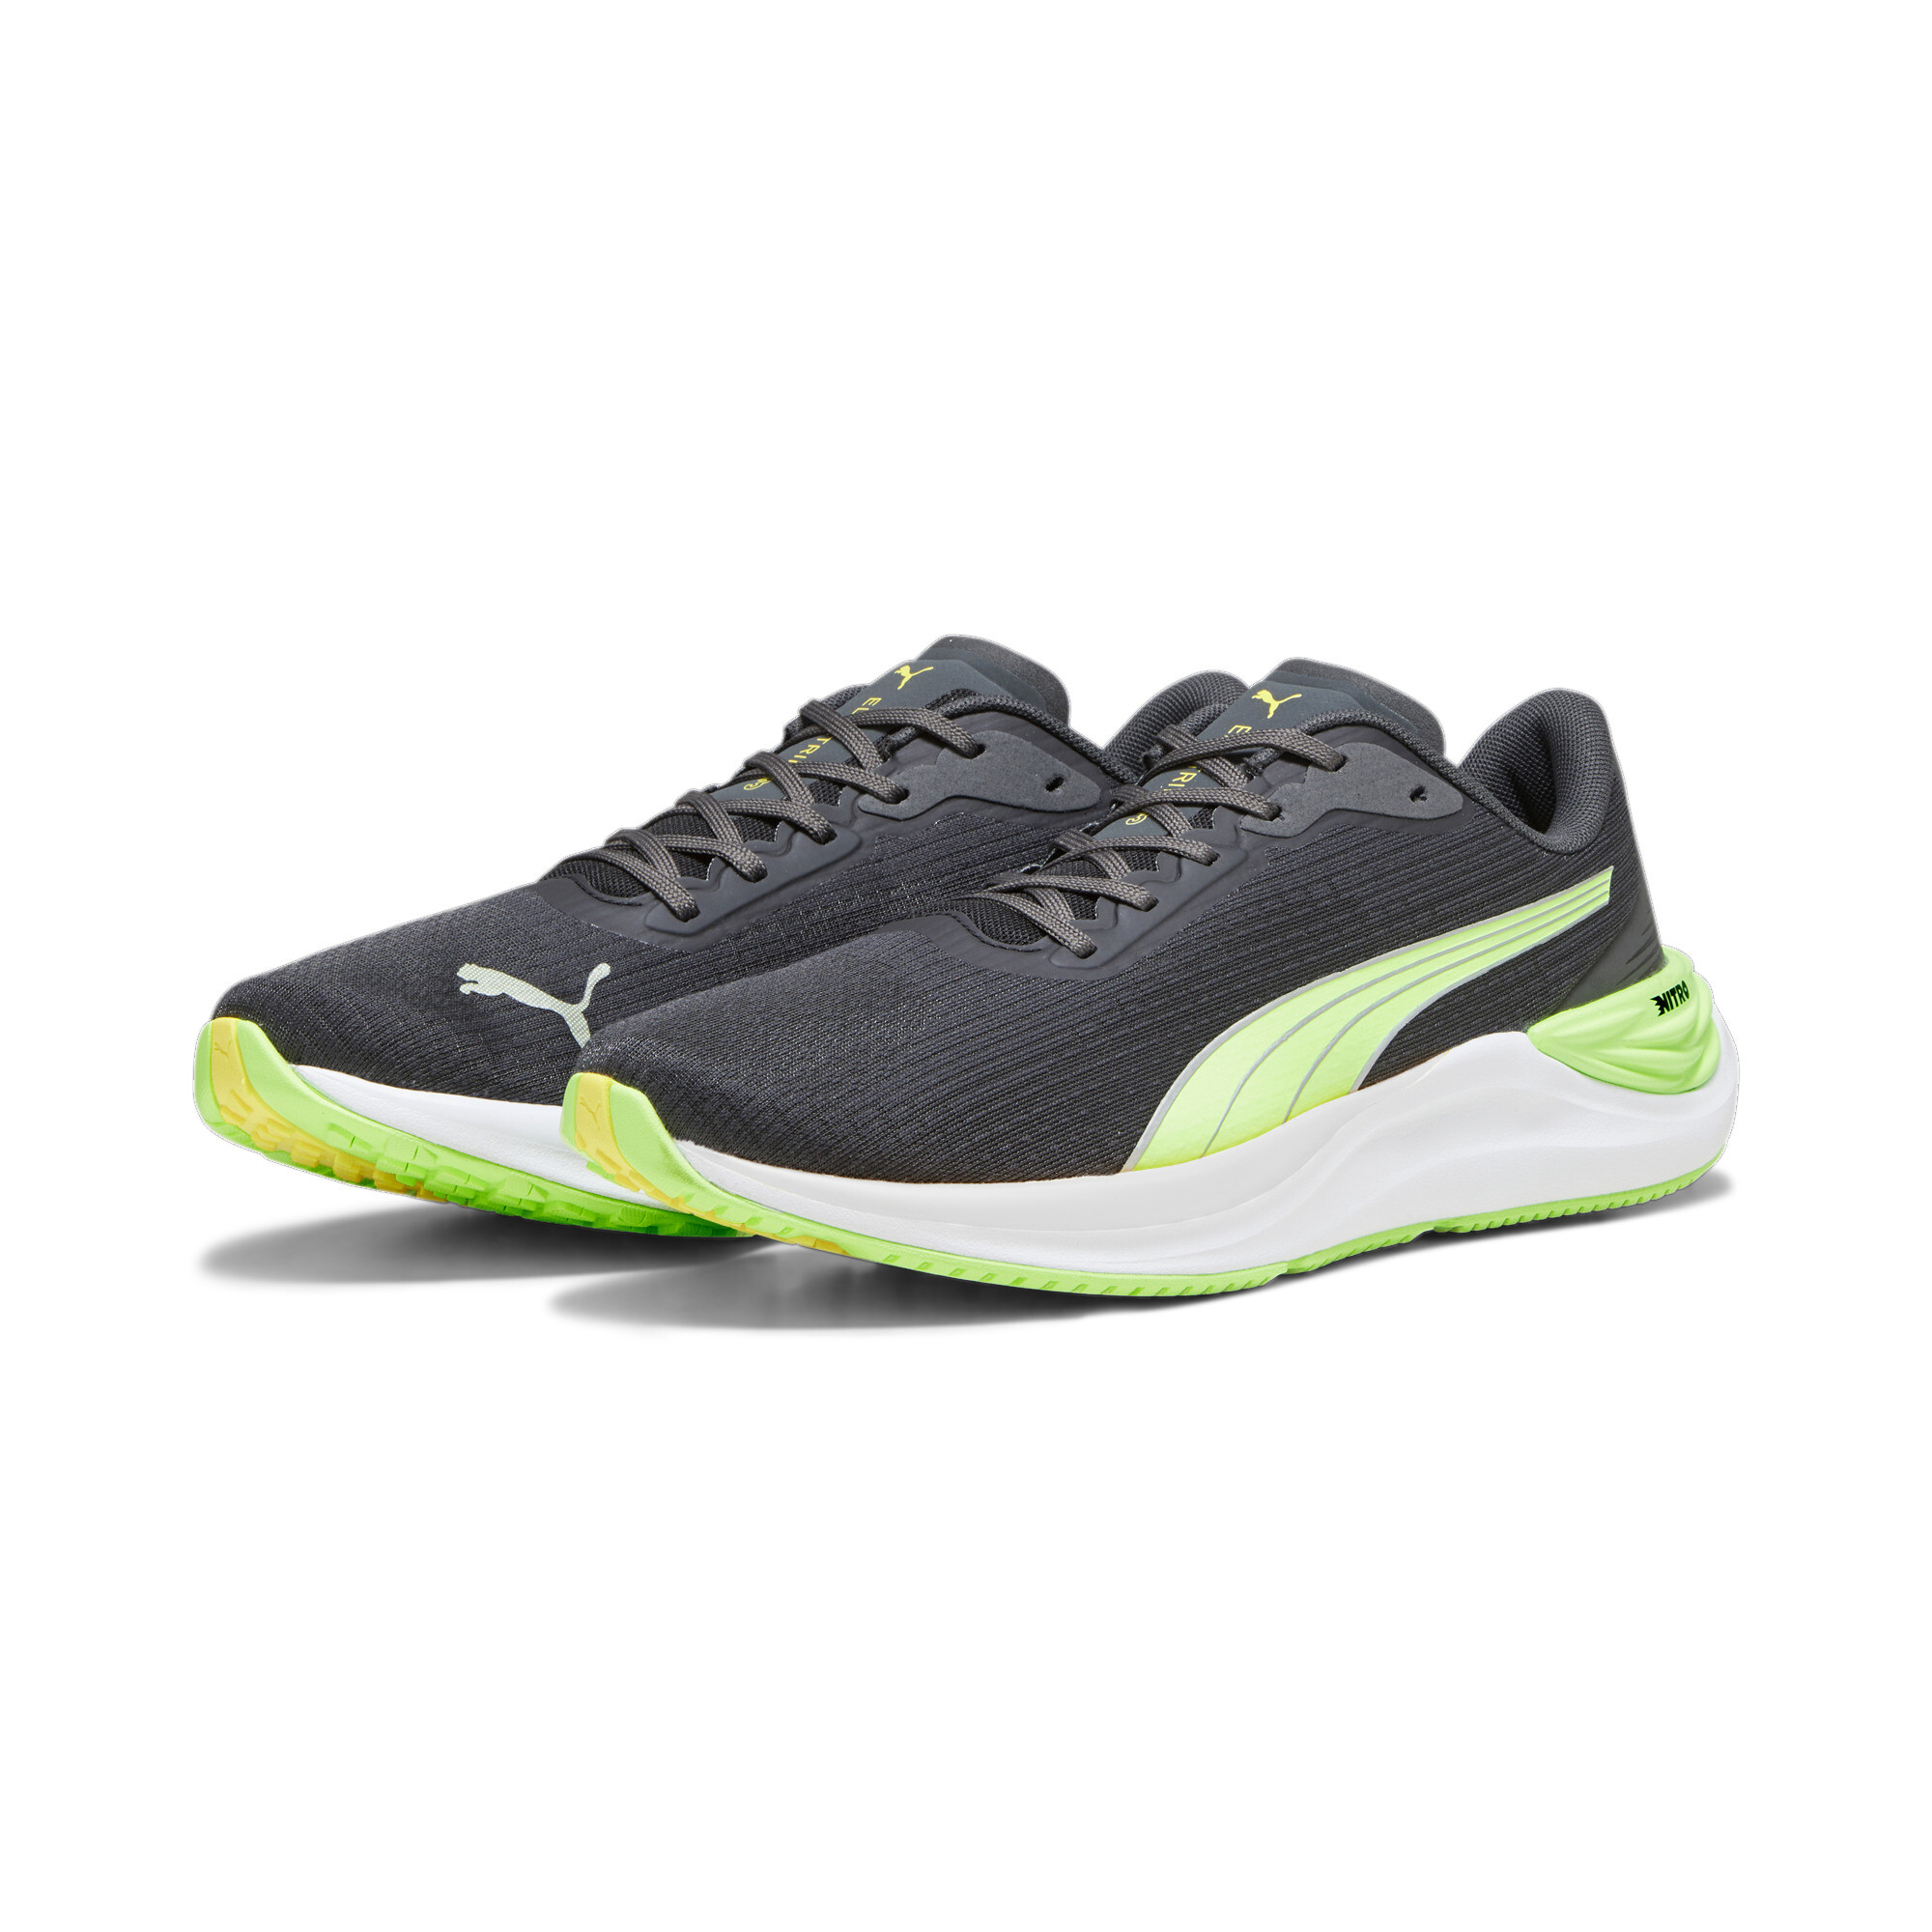 Men's PUMA Electrify NITROâ¢ 3 Running Shoes In Black, Size EU 48.5